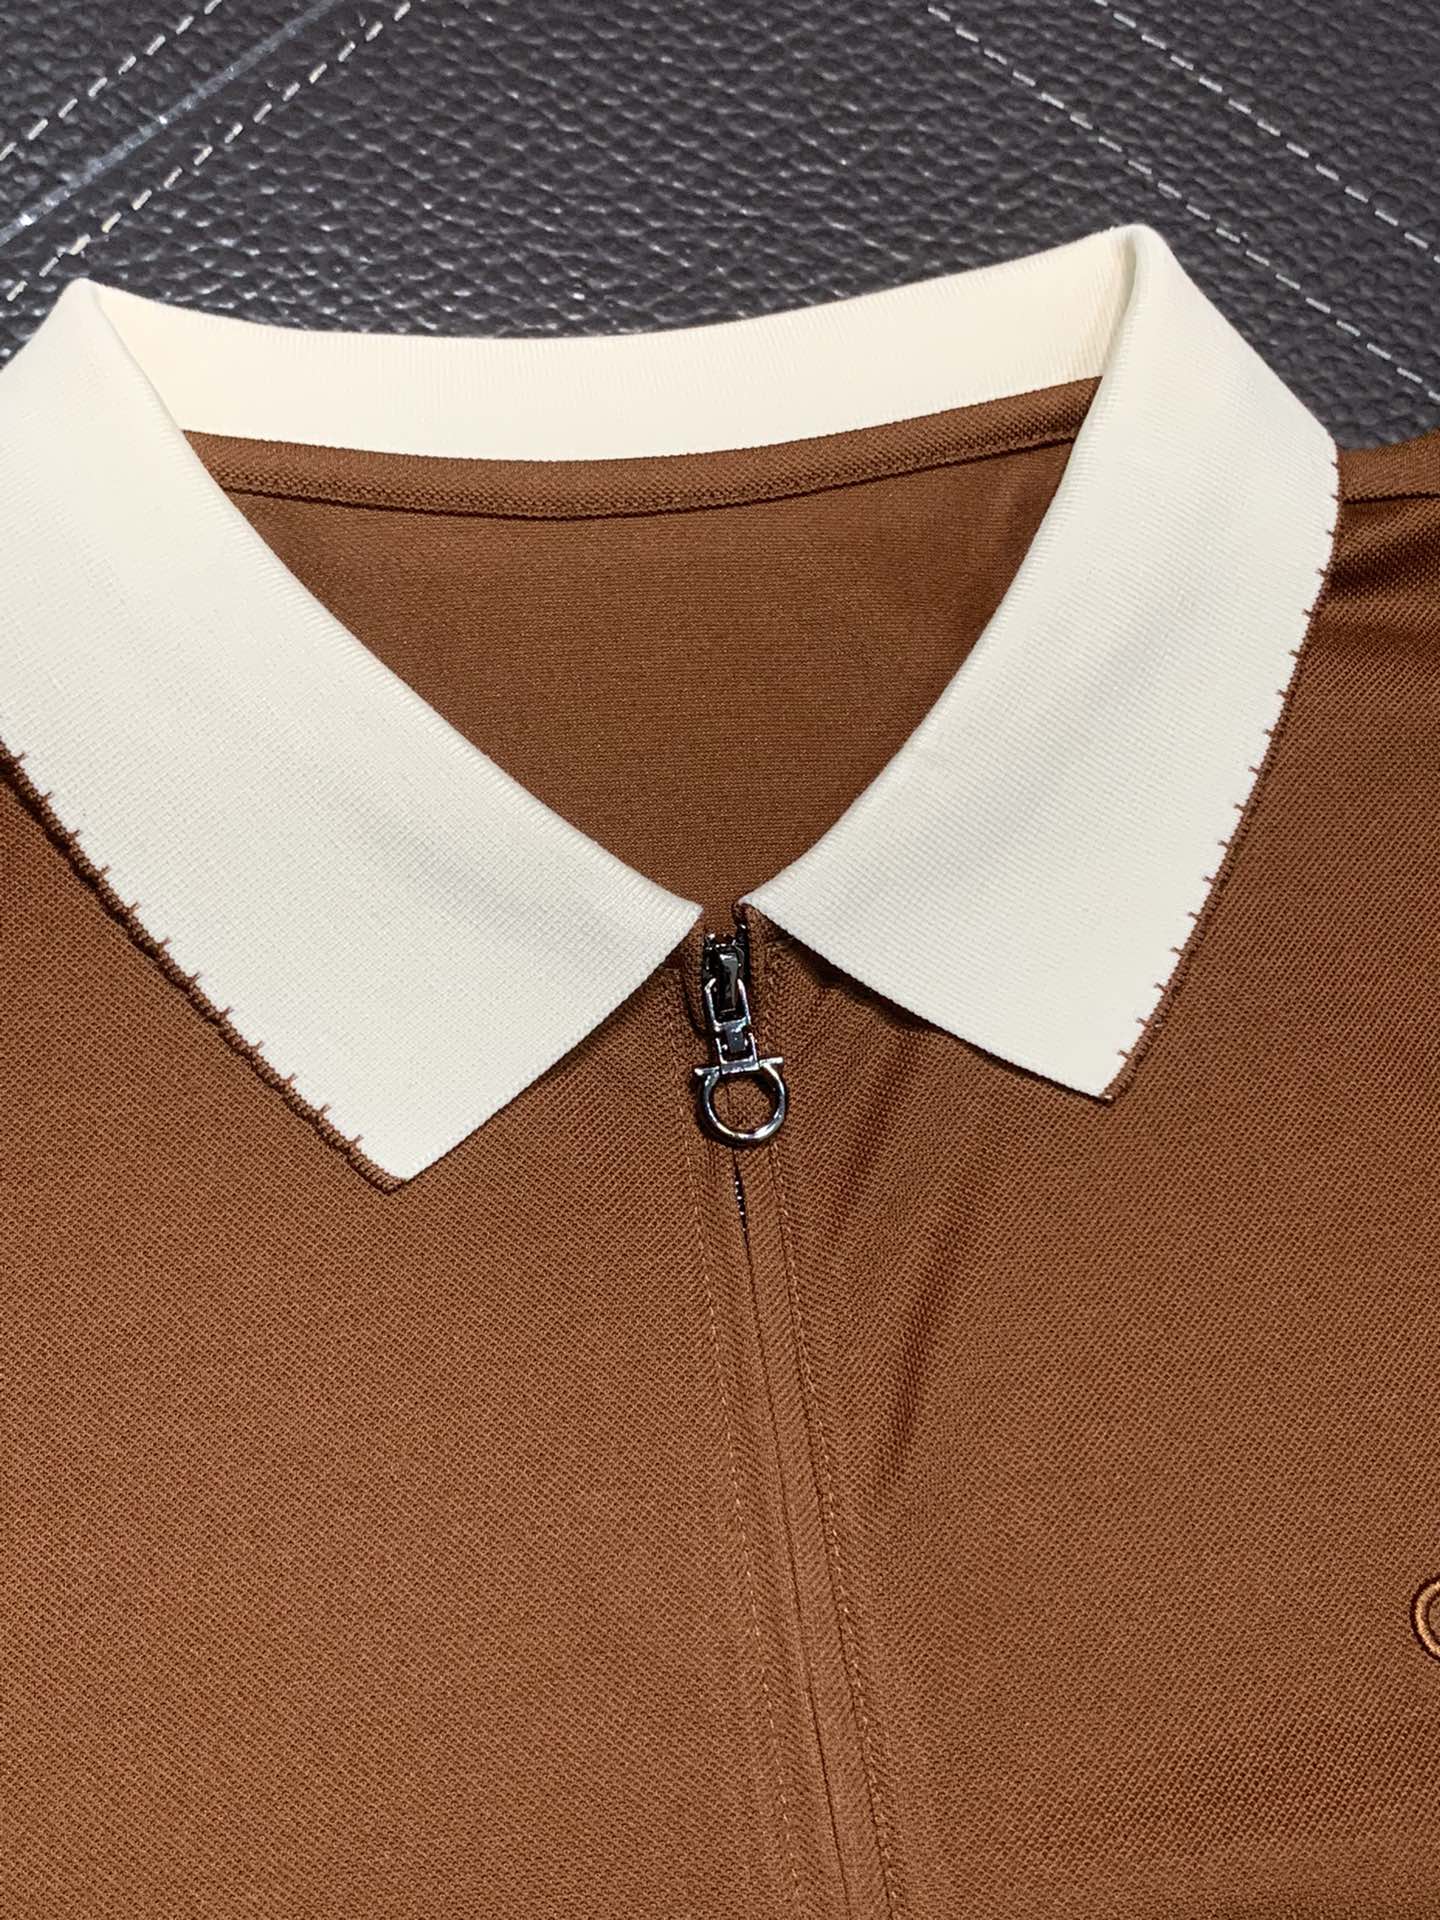 菲拉格慕独家专供新款原单男士休闲Polo短袖高端定制高版本时尚百搭爆款️️进口面料领口logo图案设计手